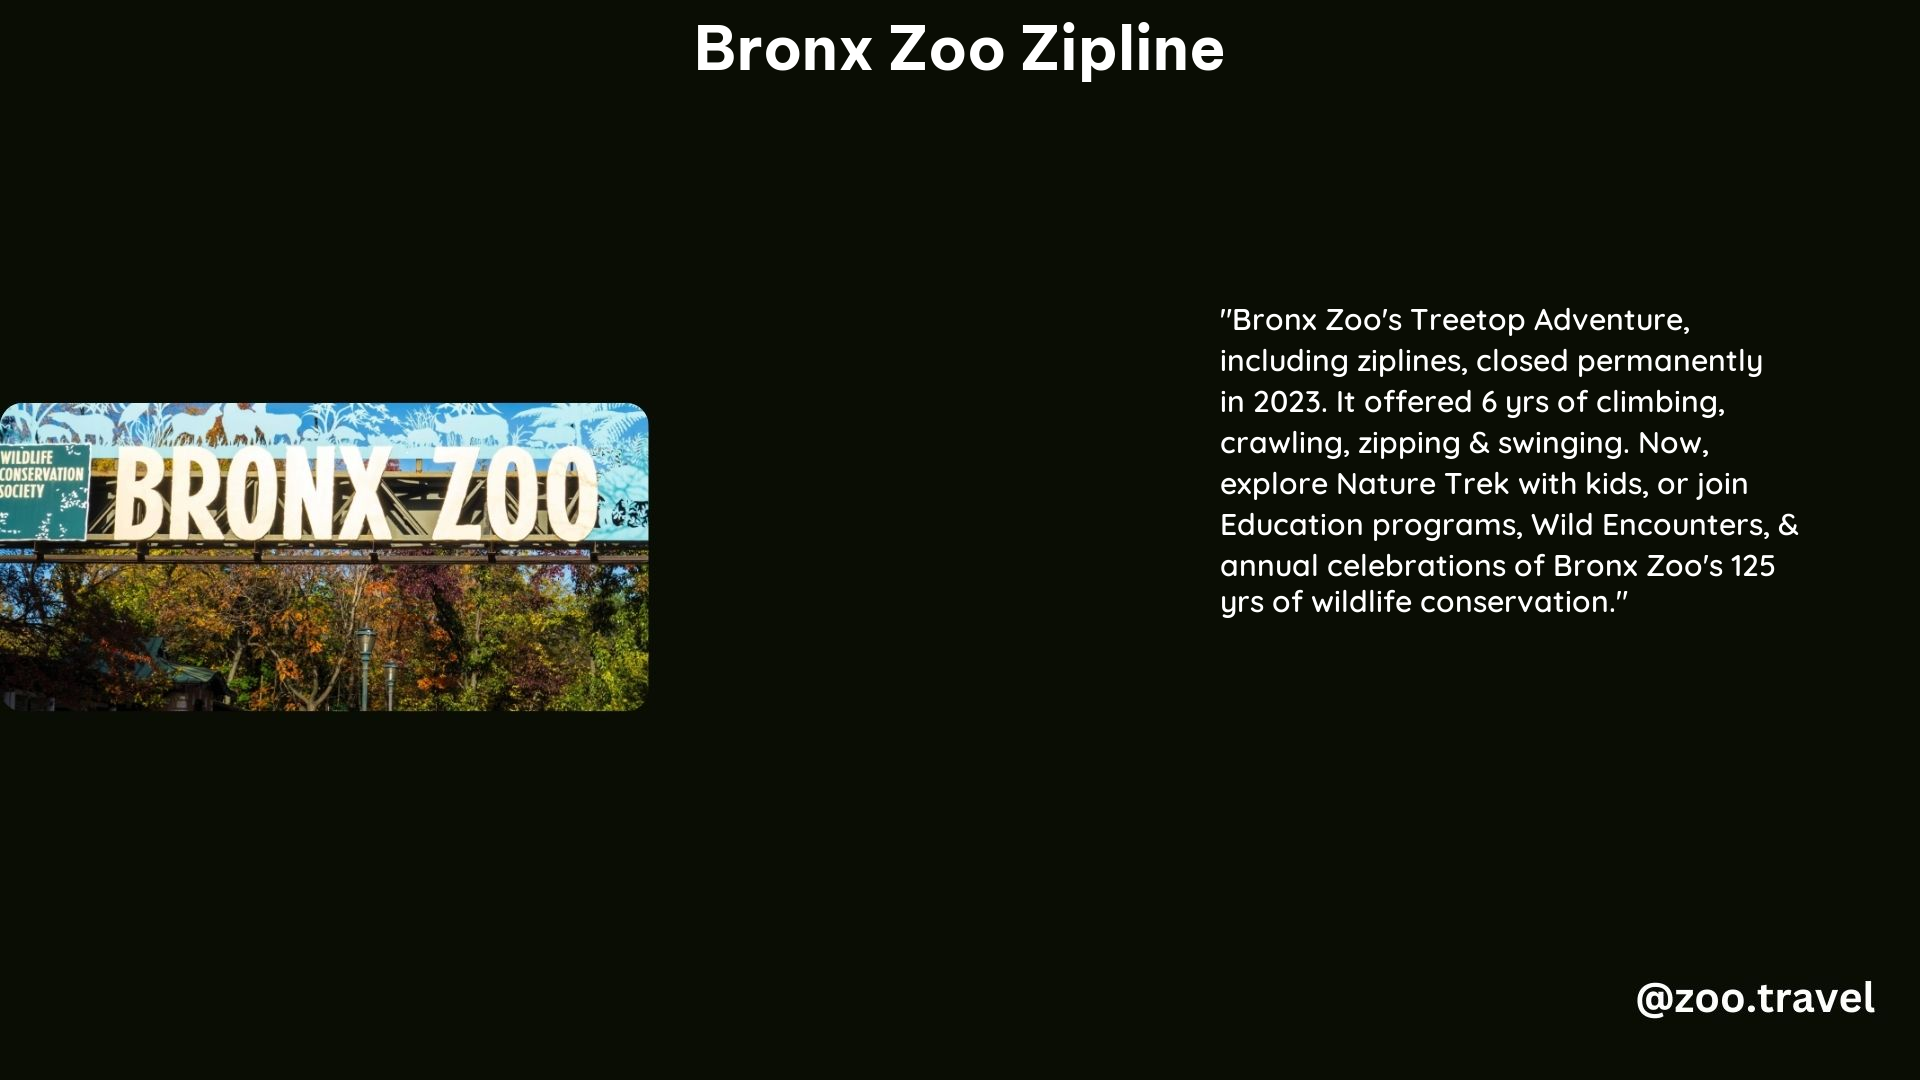 Bronx Zoo Zipline